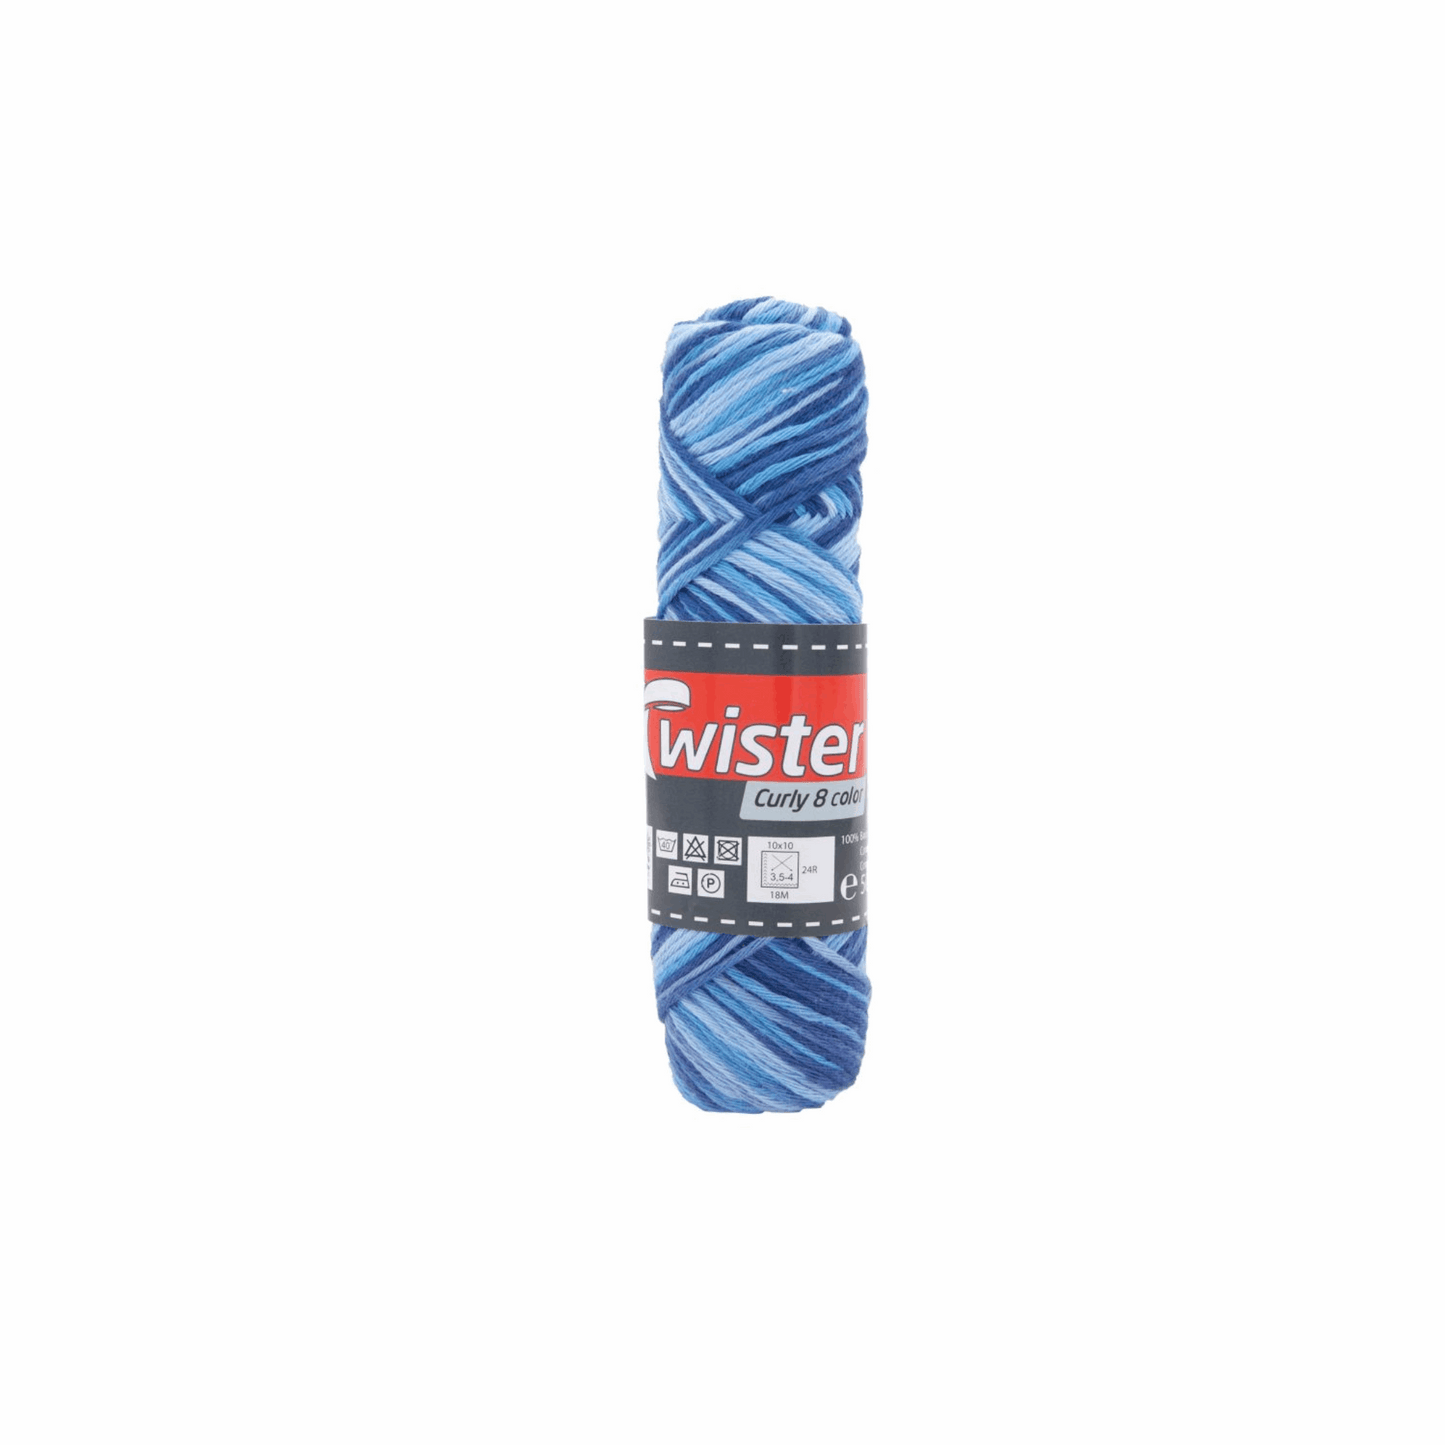 Twister Curly 8fädig, 50g, 98355, Farbe blau royal marine 102